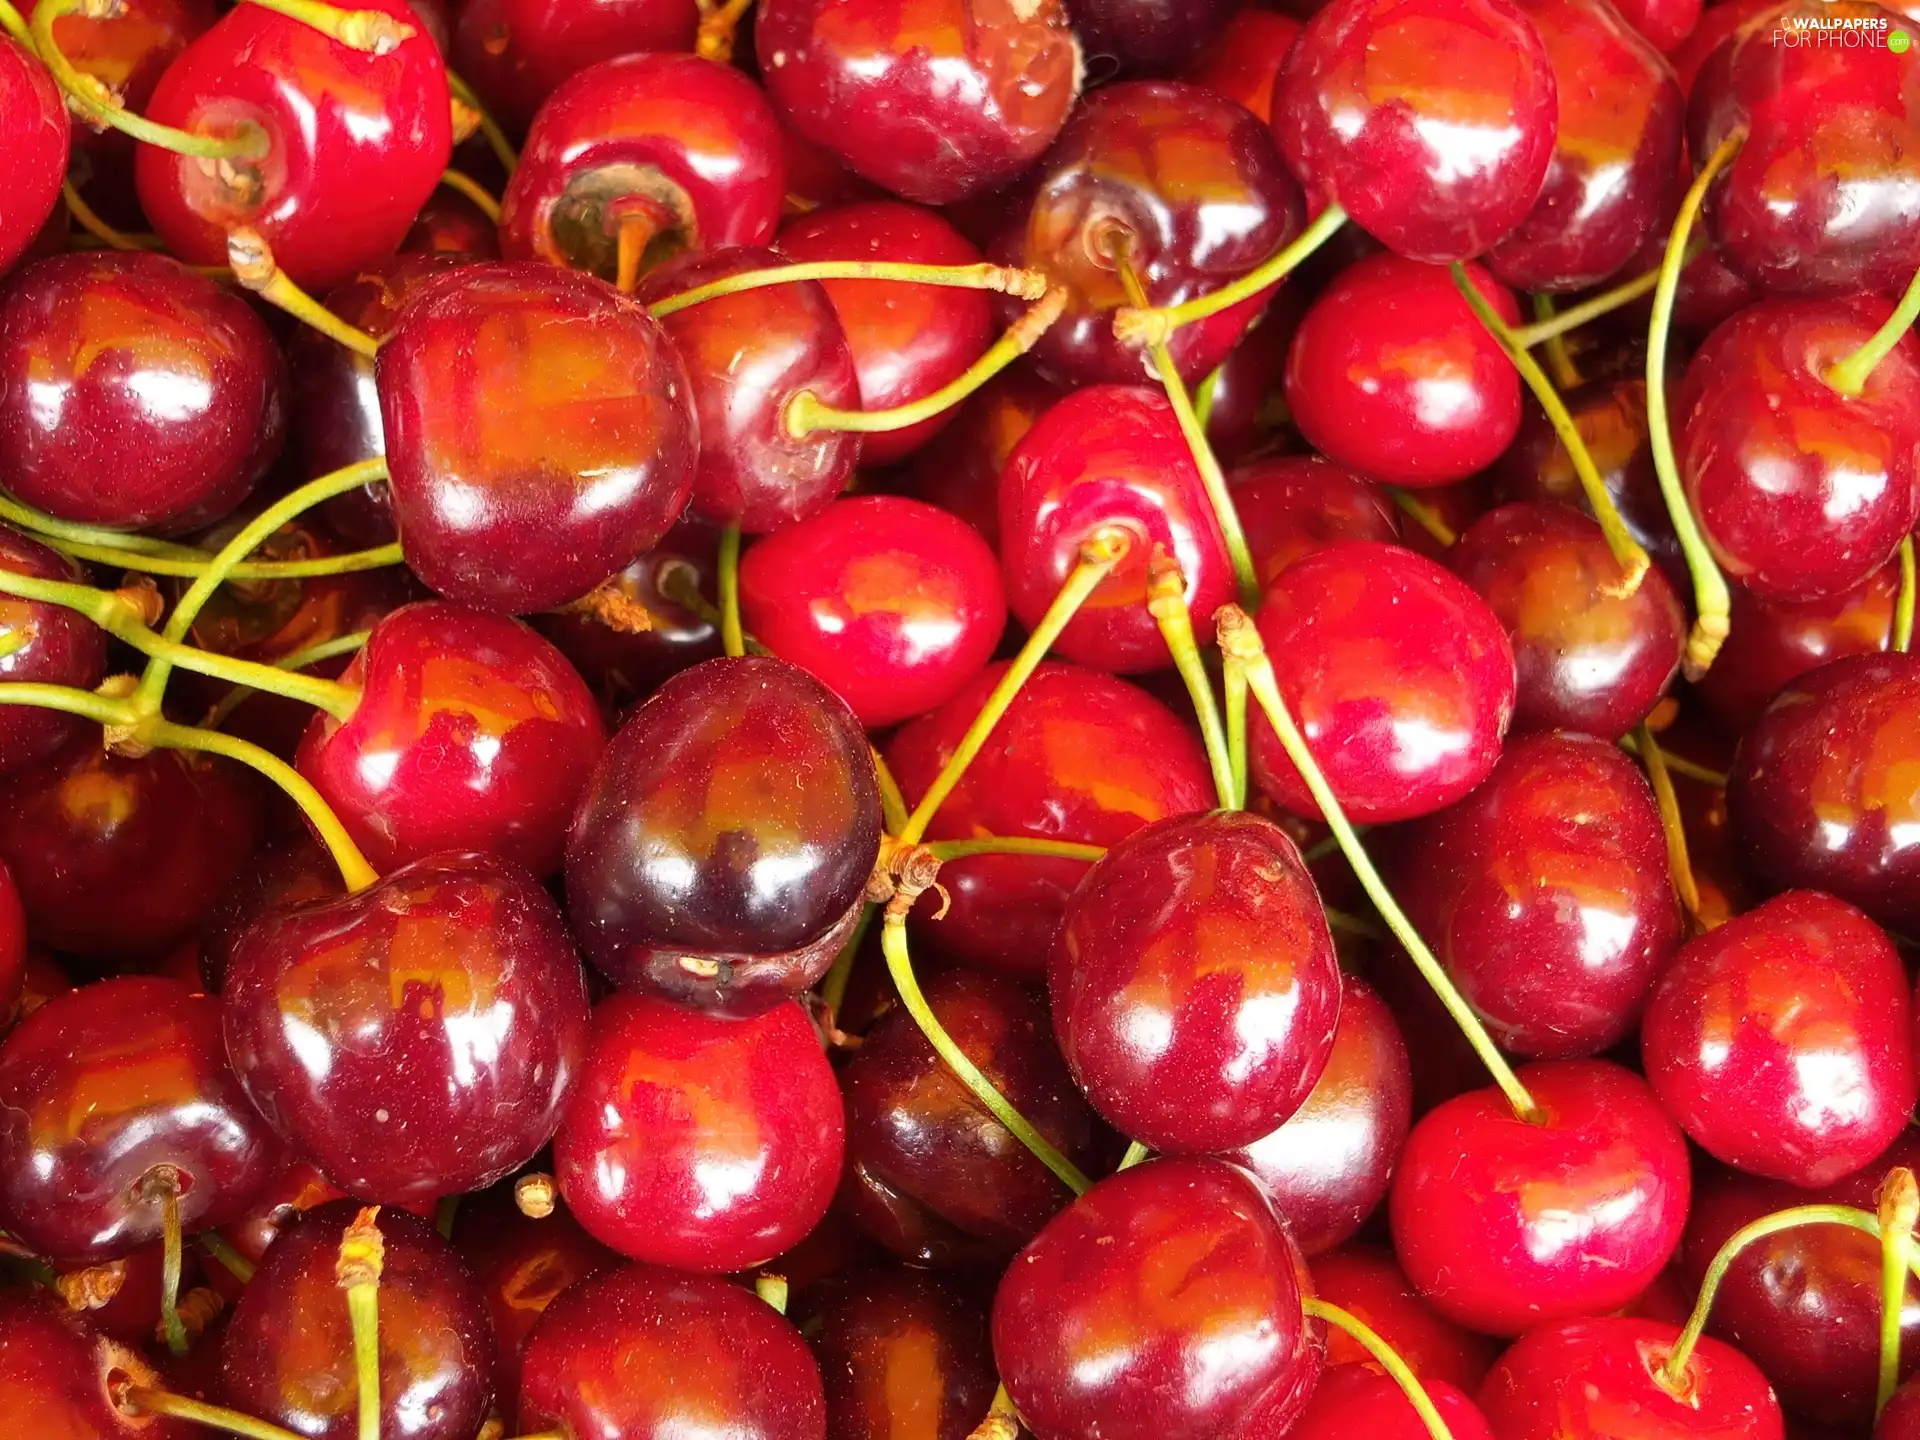 cherries, tails